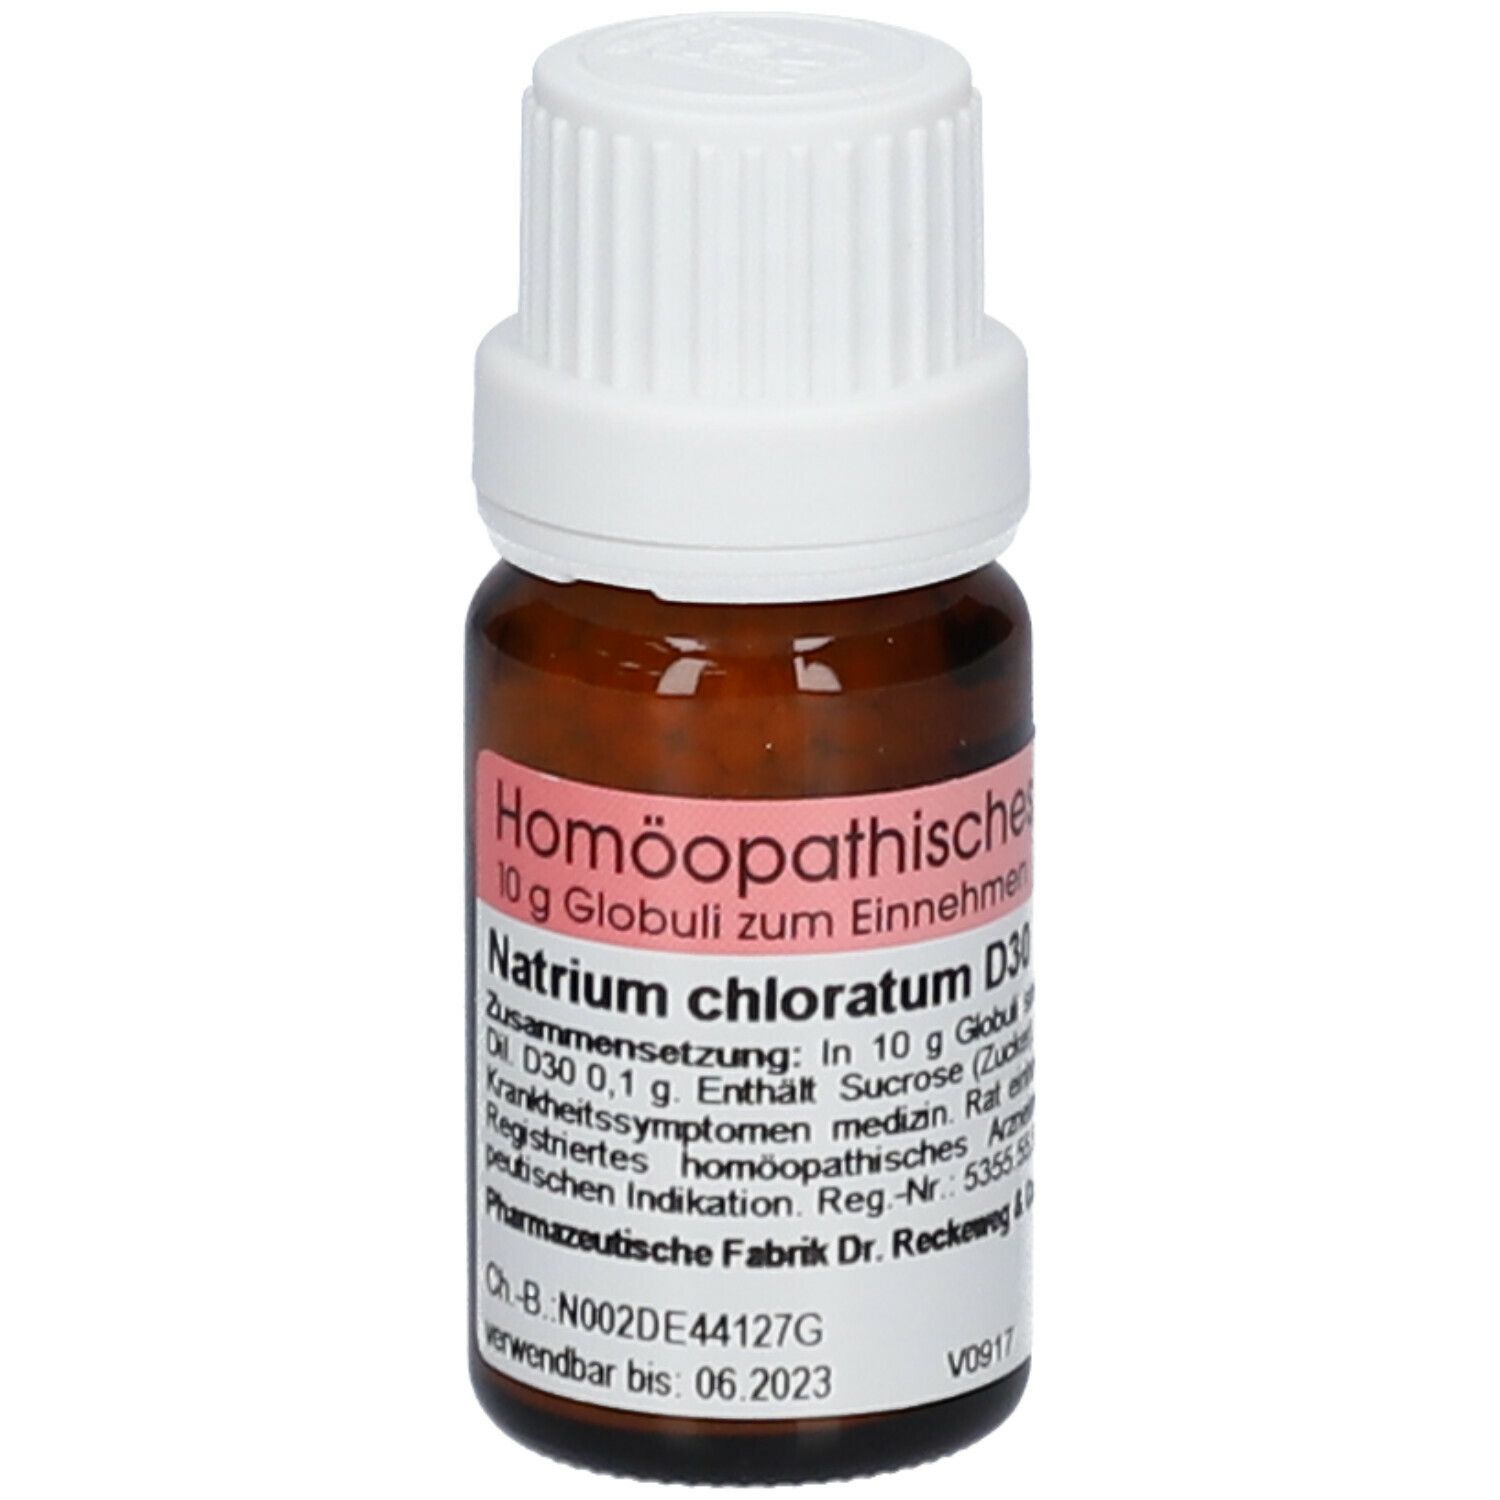 Natrium chloratum D30 Globuli